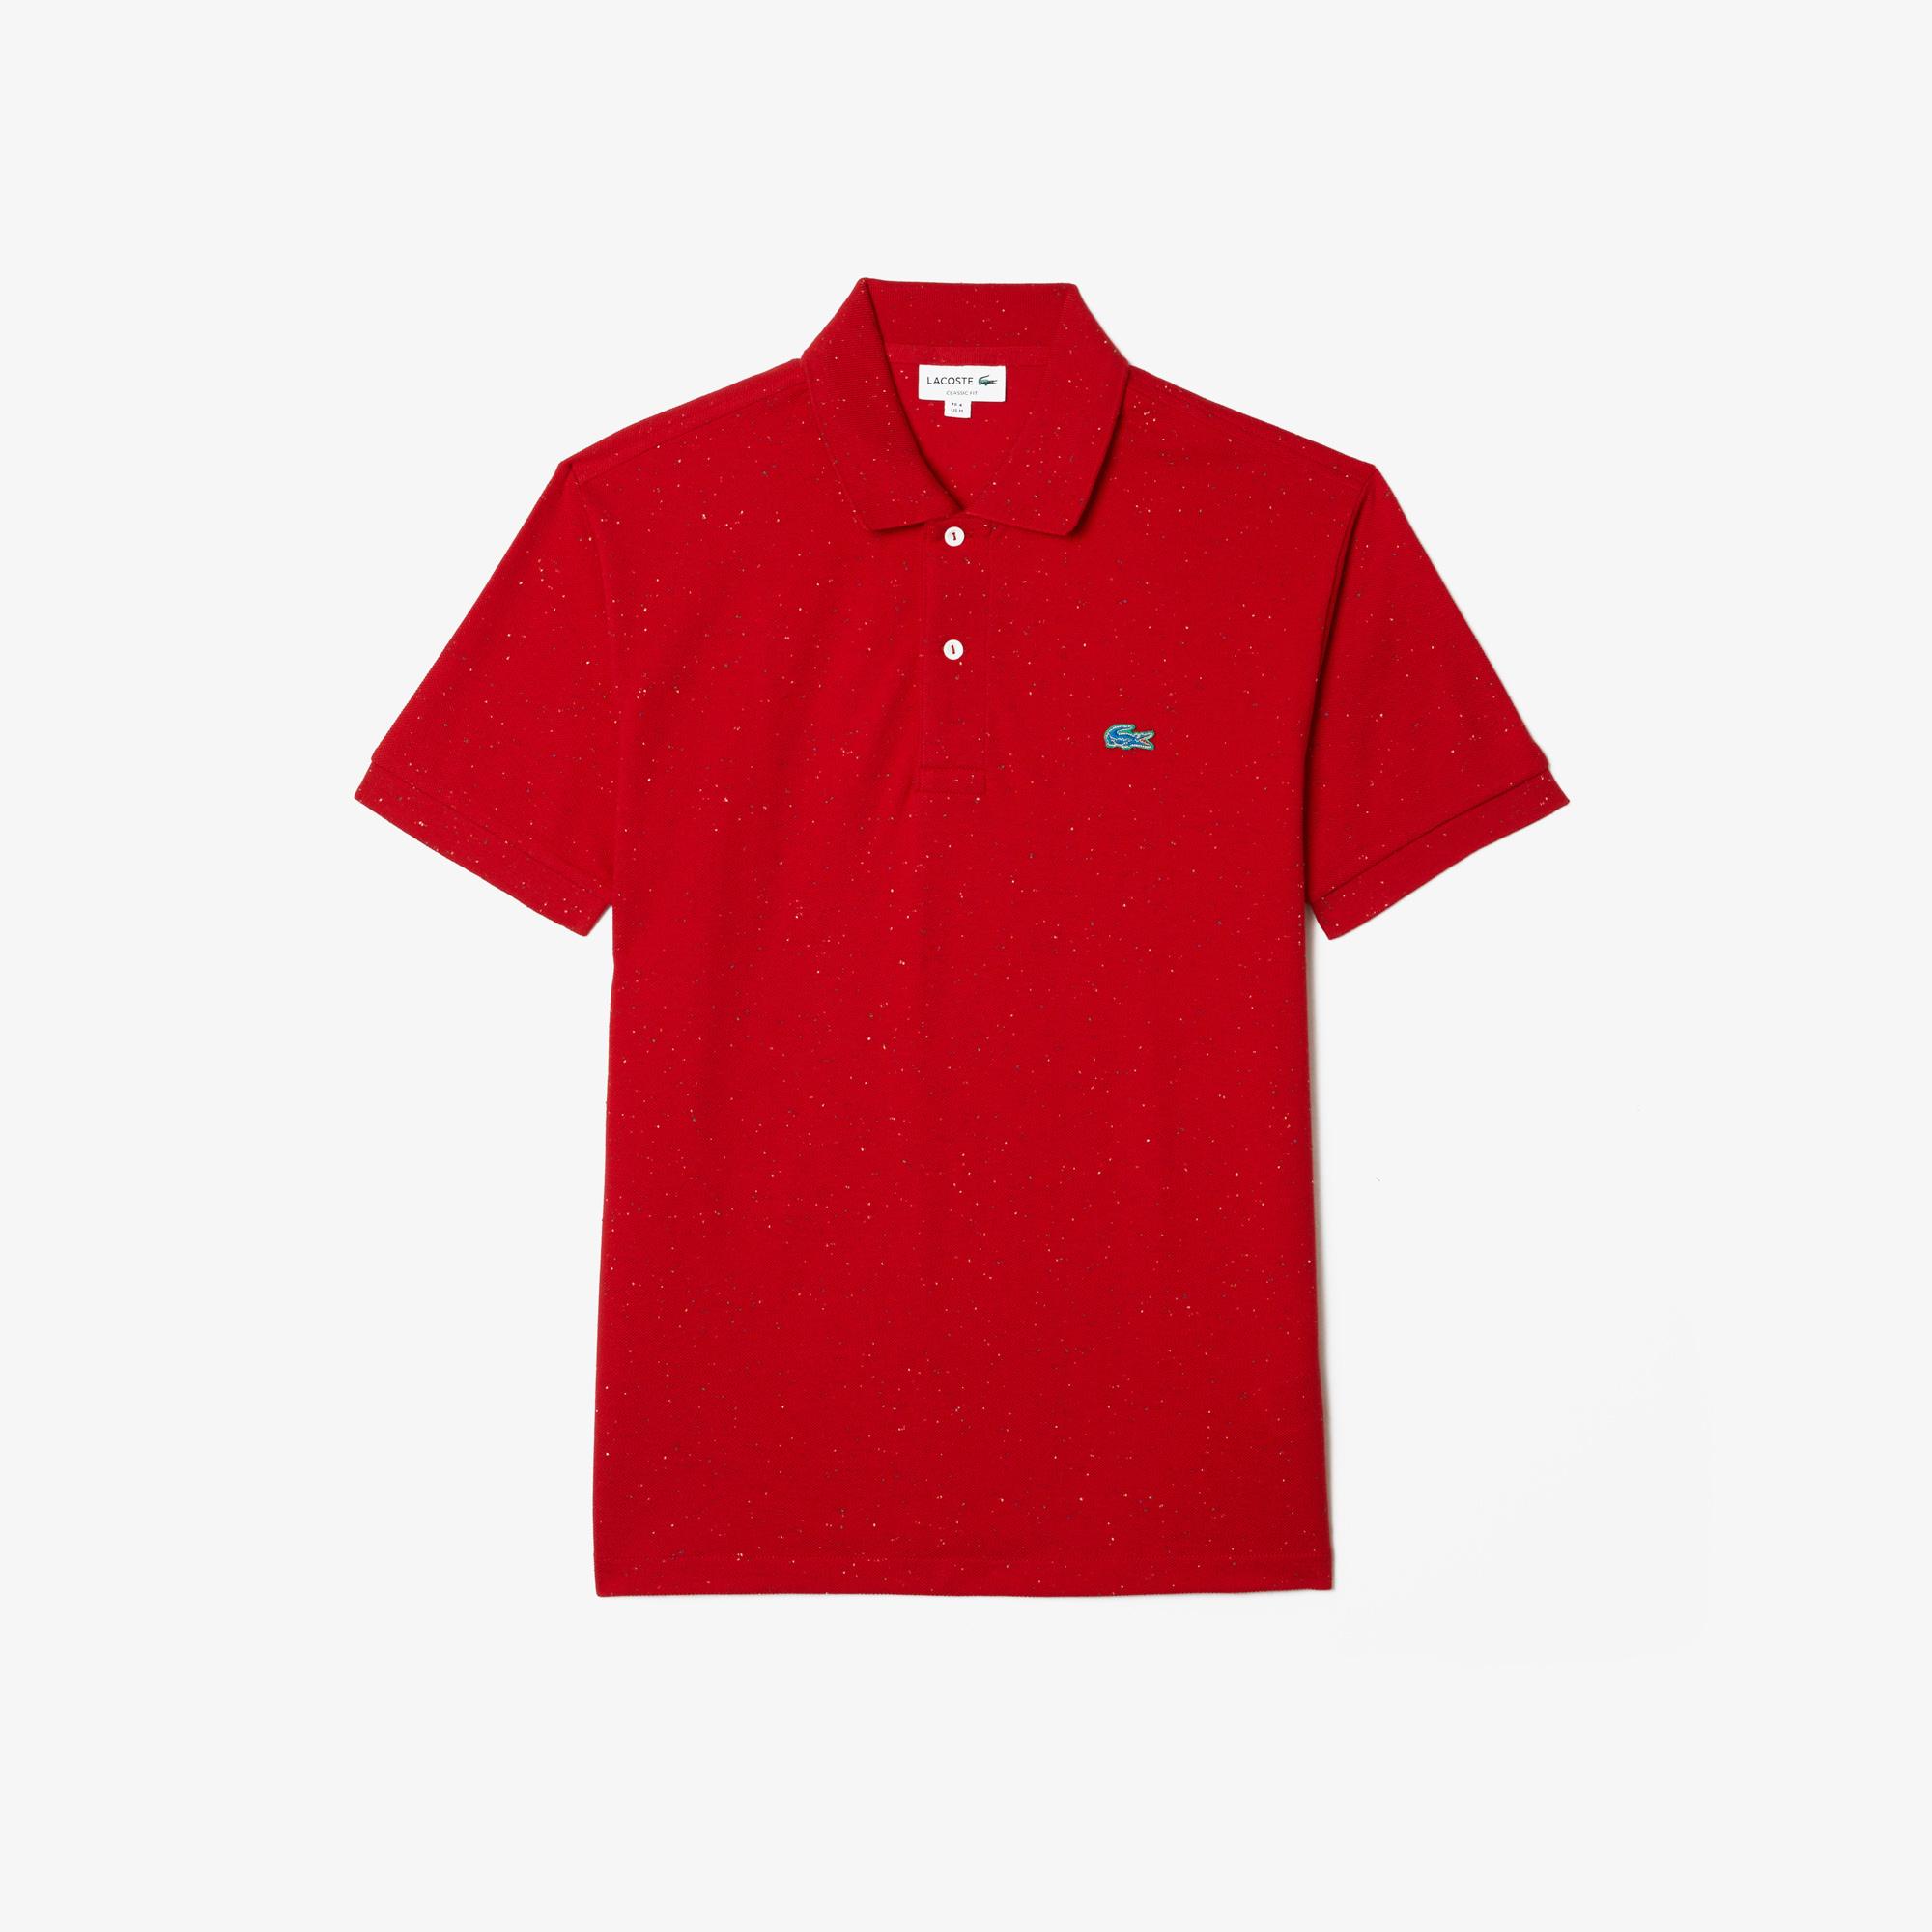 Lacoste Men's Classic Fit Speckled Print Cotton Piqué Polo Shirt